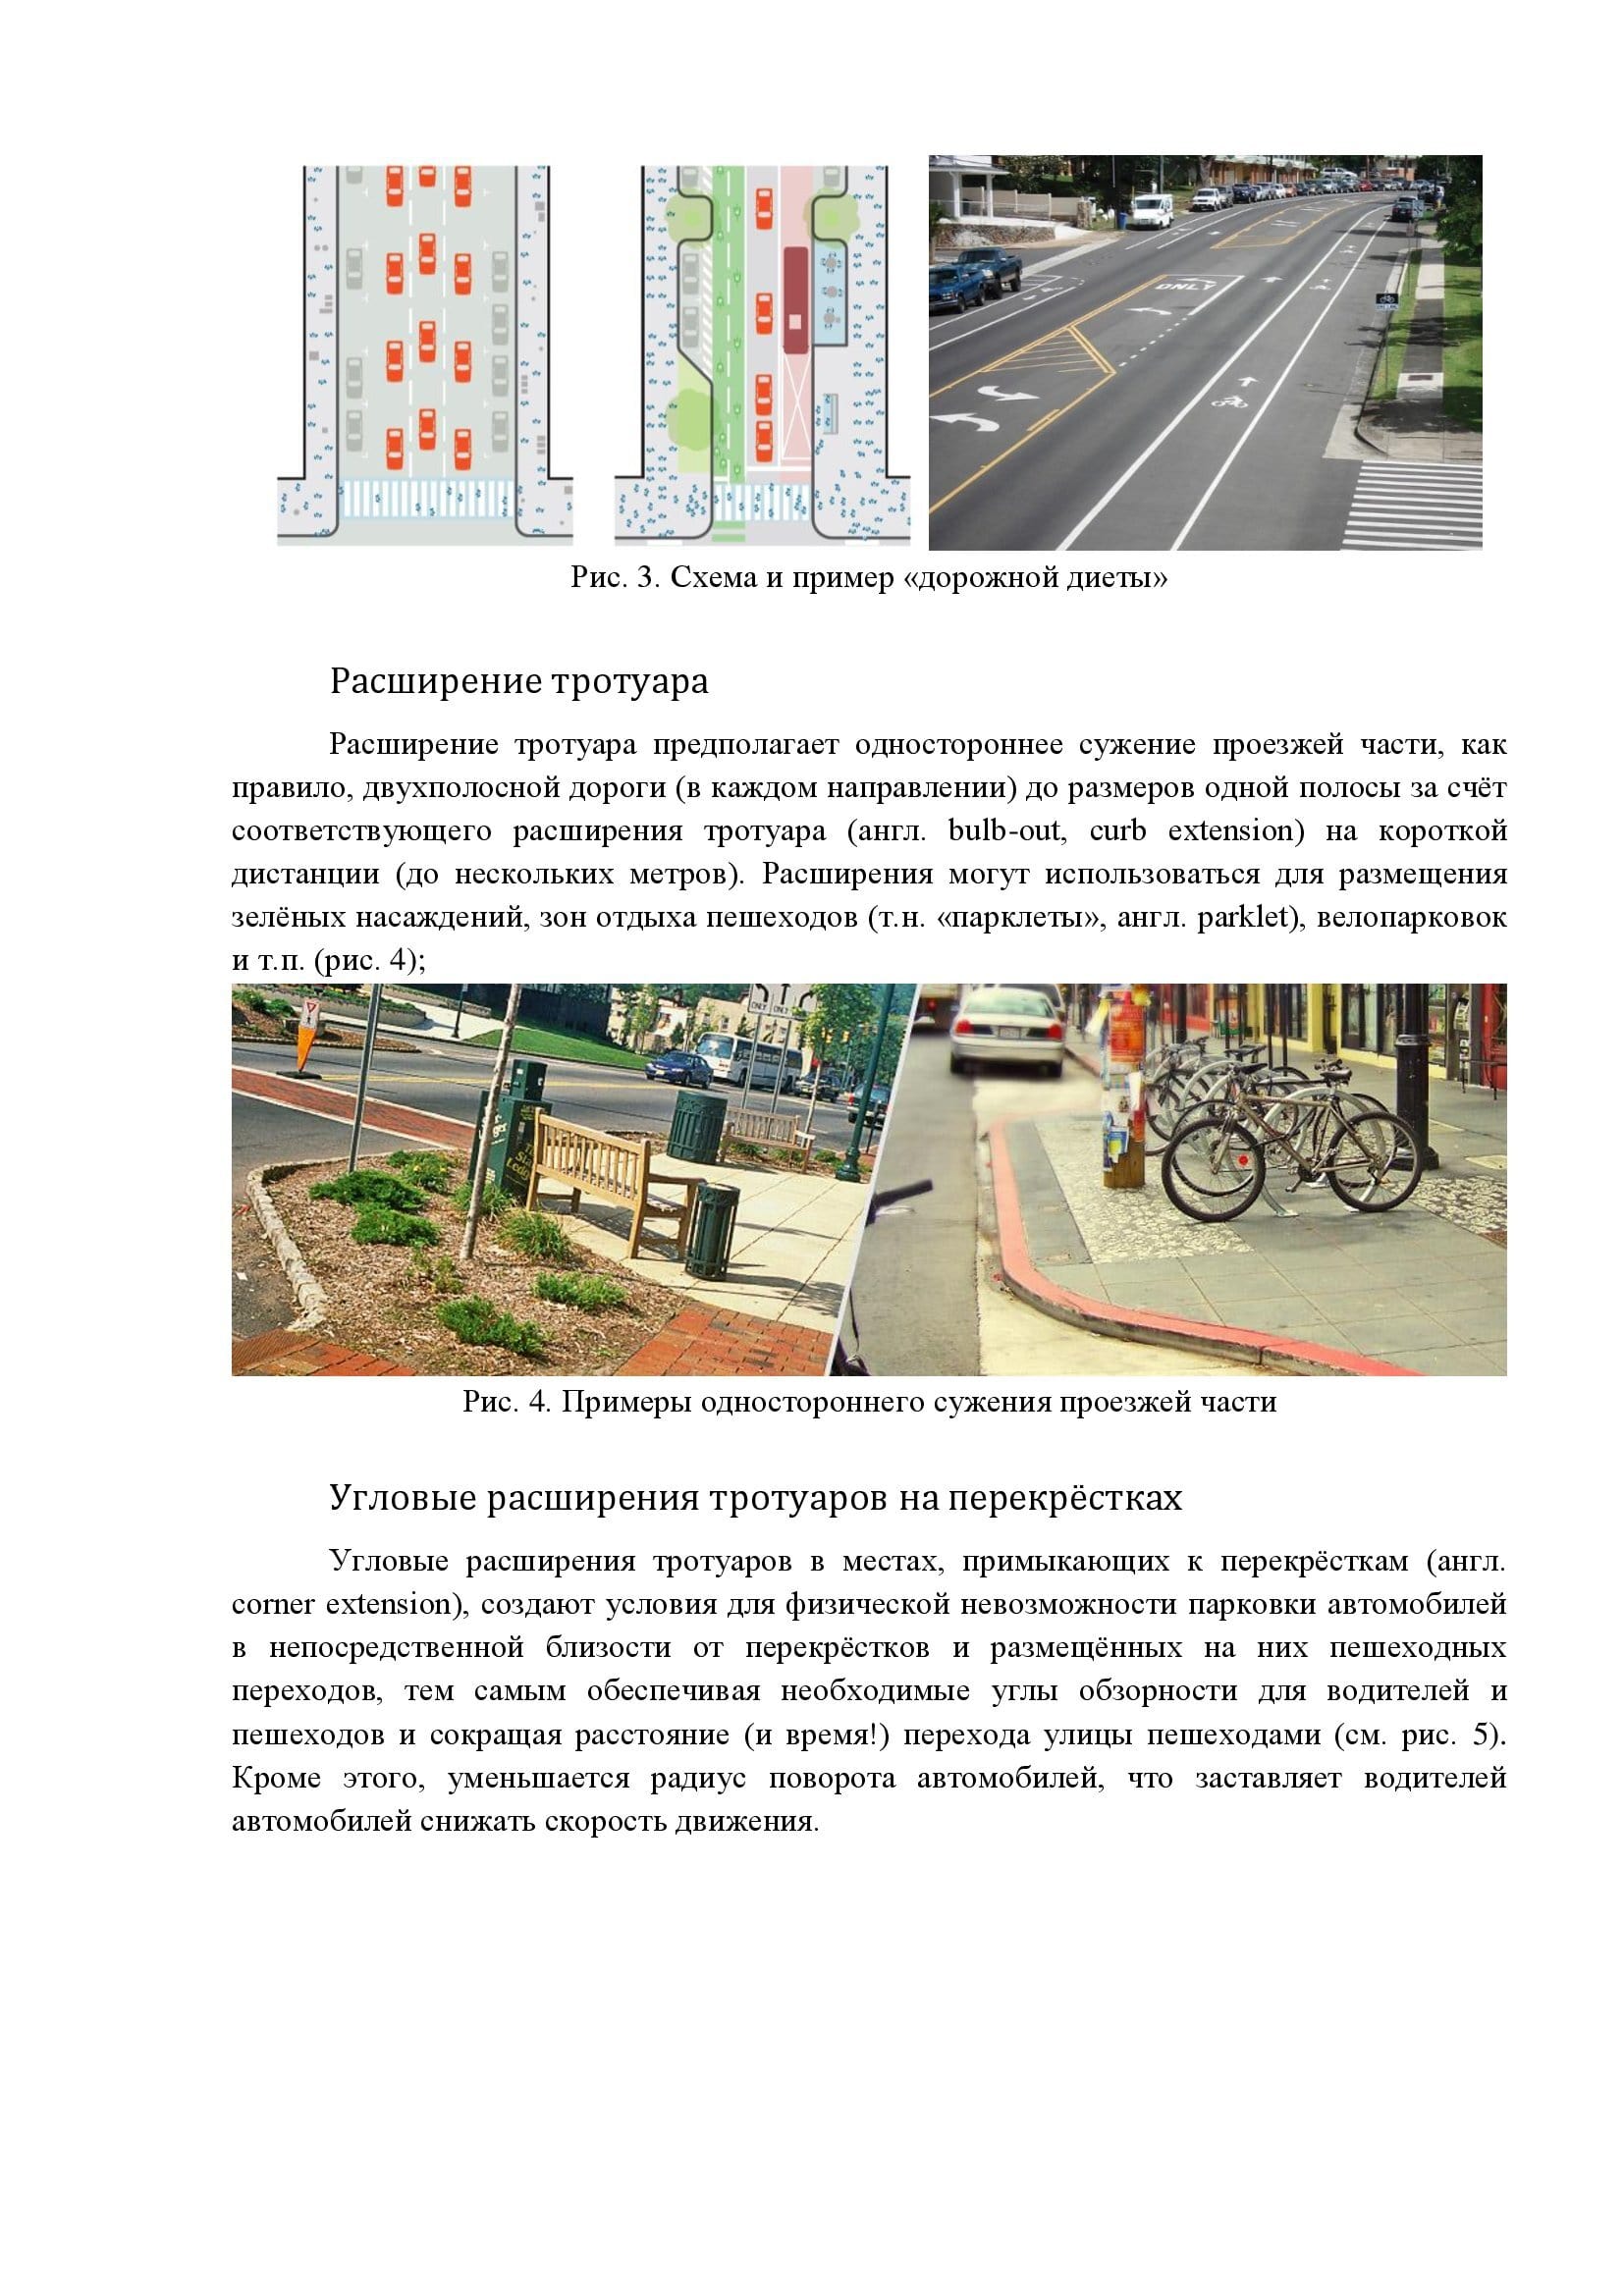 Меры по «успокоению» автомобильного трафика как элемент создания велотранспортной сети - фото 3